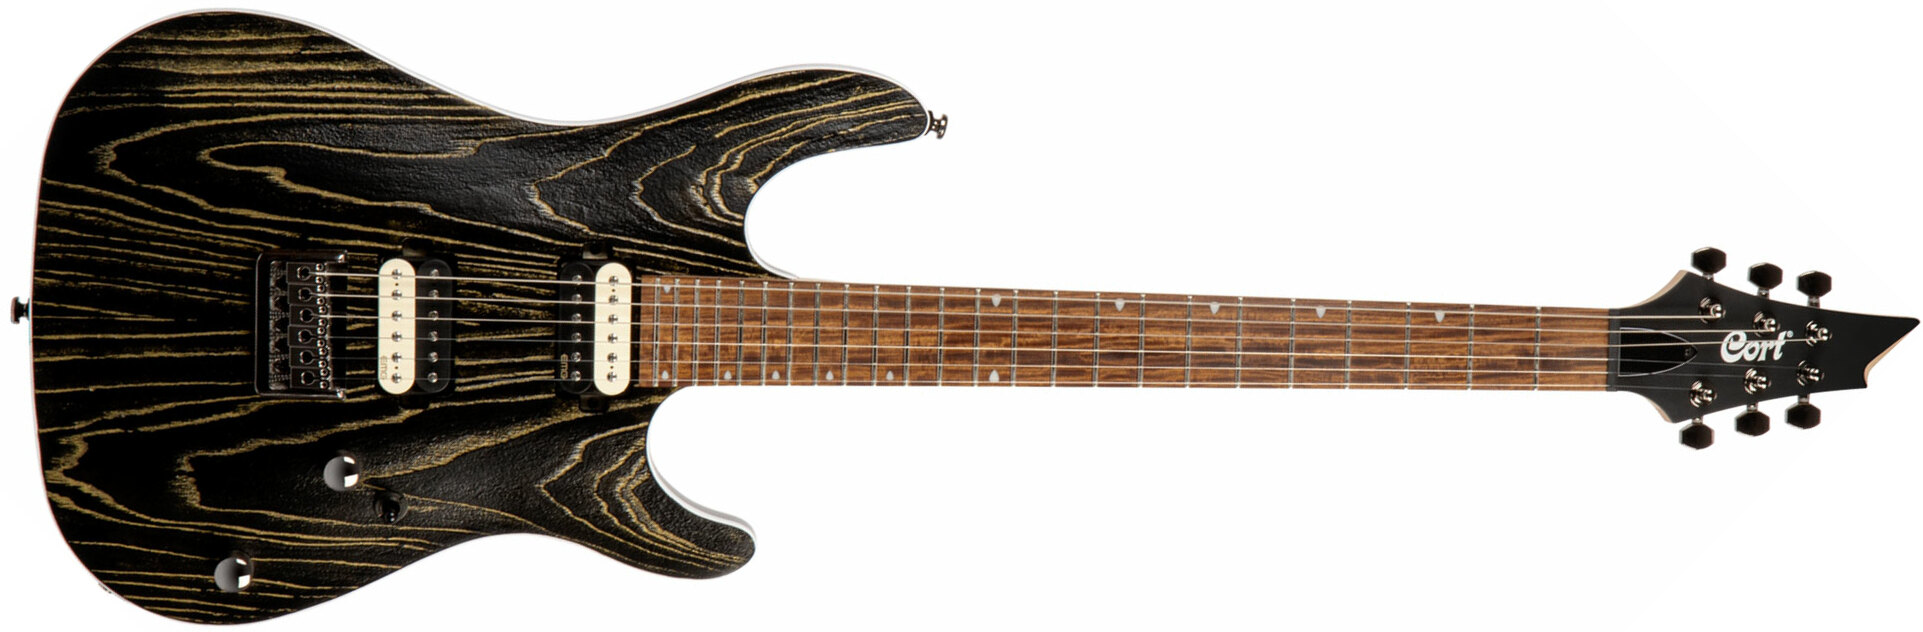 Cort Kx300 Ebr Hh Emg Ht Jat - Etched Black Gold - Elektrische gitaar in Str-vorm - Main picture